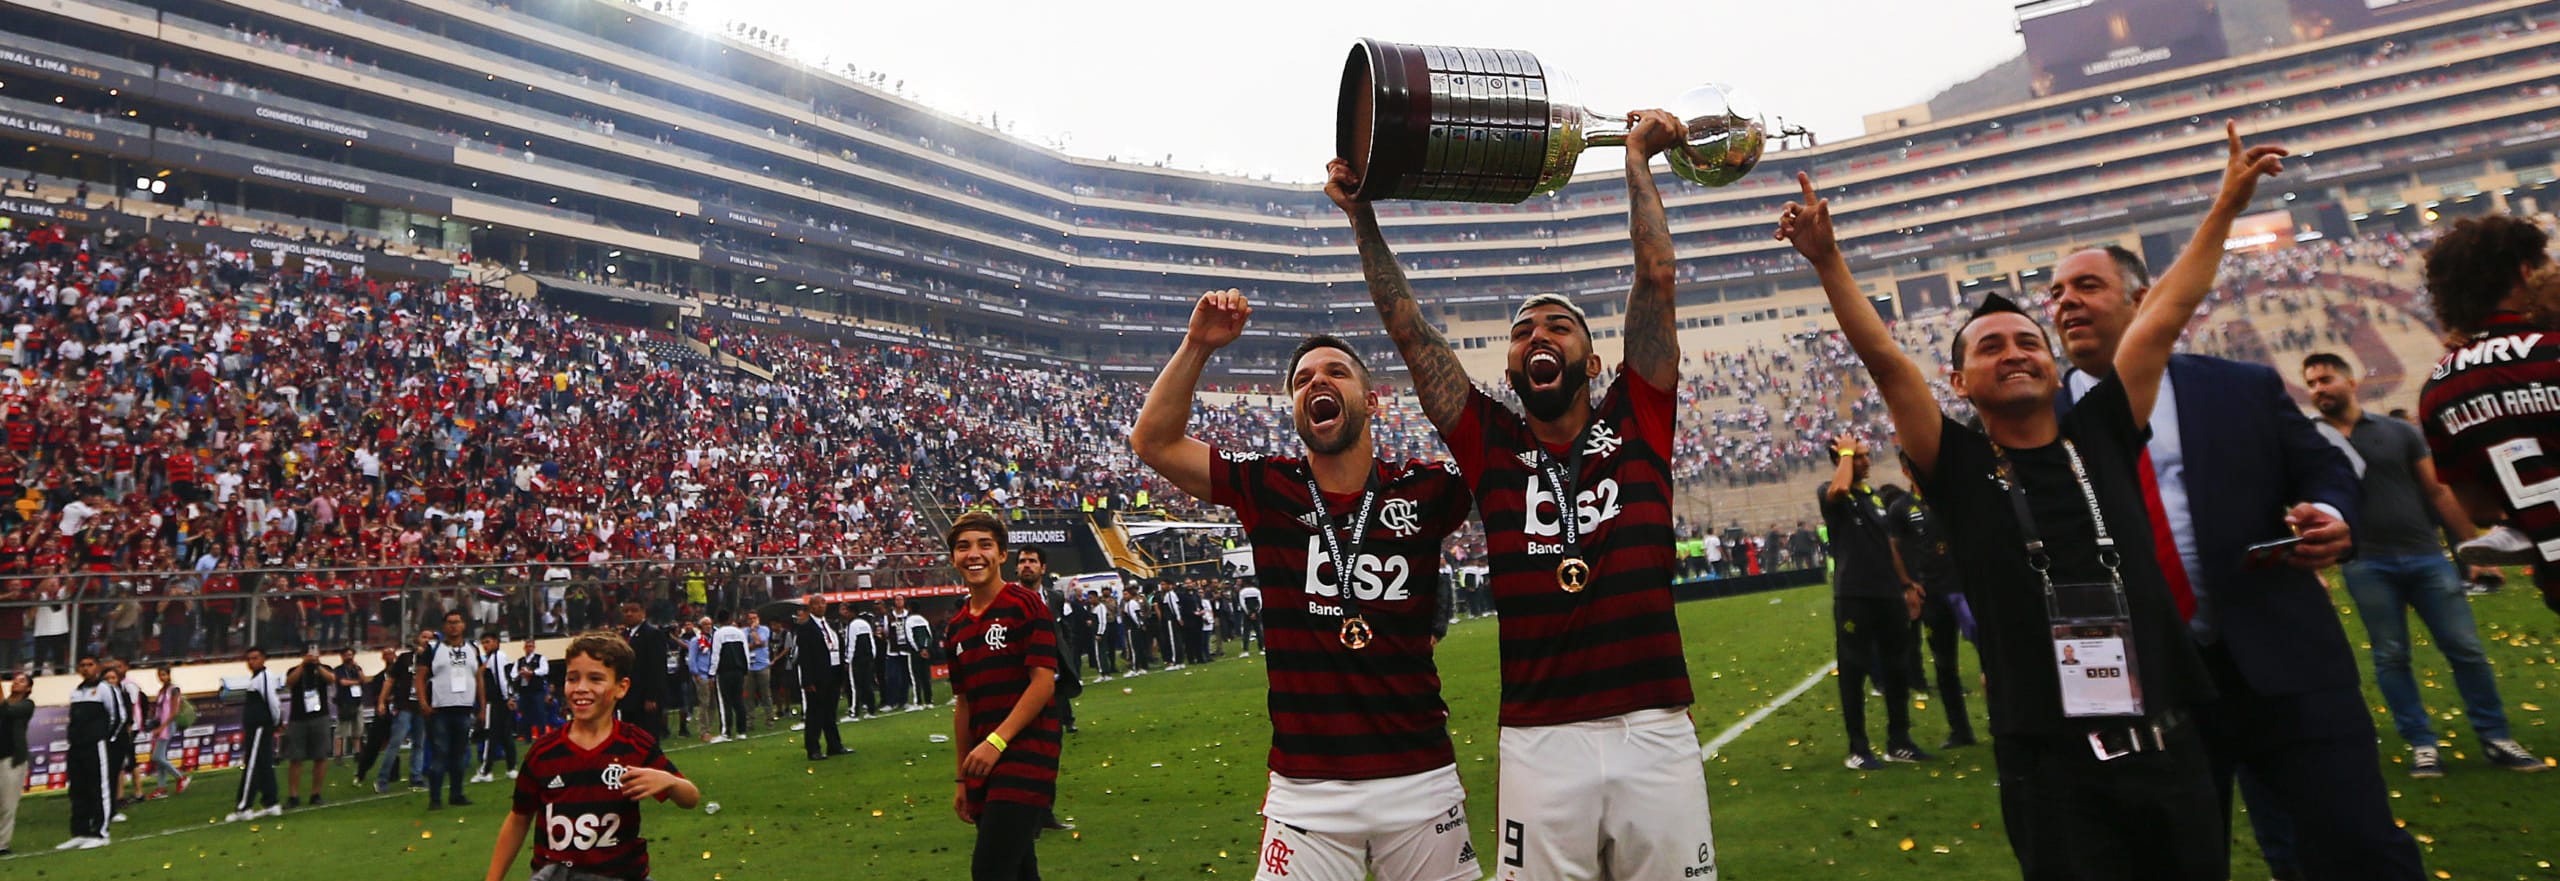 Copa Libertadores 2020: parte la caccia a Flamengo, possibile un nuovo Superclásico in finale!